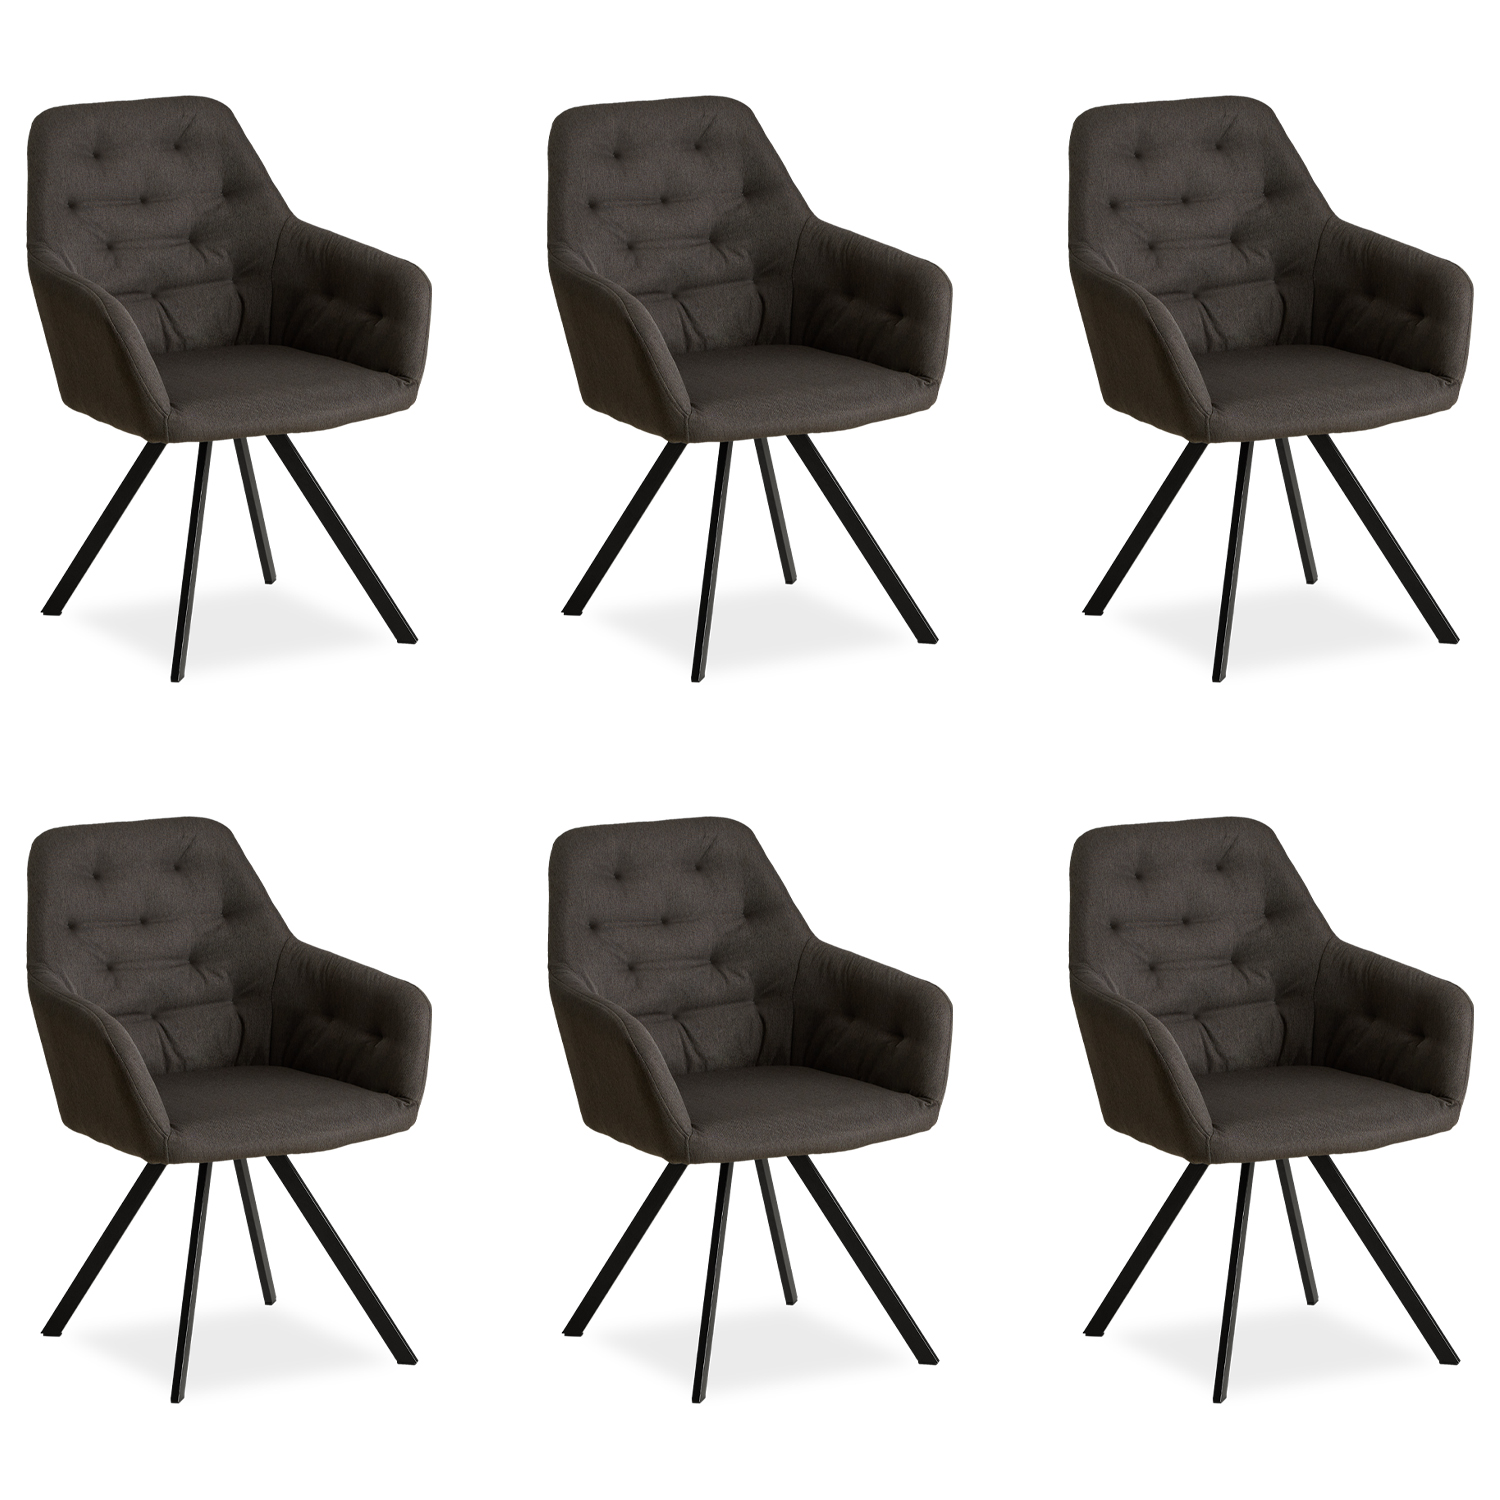 Chaise Salle à Manger Lot de 1, 2, 4 ou 6 Anthracite Non-rotative Design Moderne Chaises de Cuisine Gris rotative Chaise pas Cher Fauteuil Rembourrée